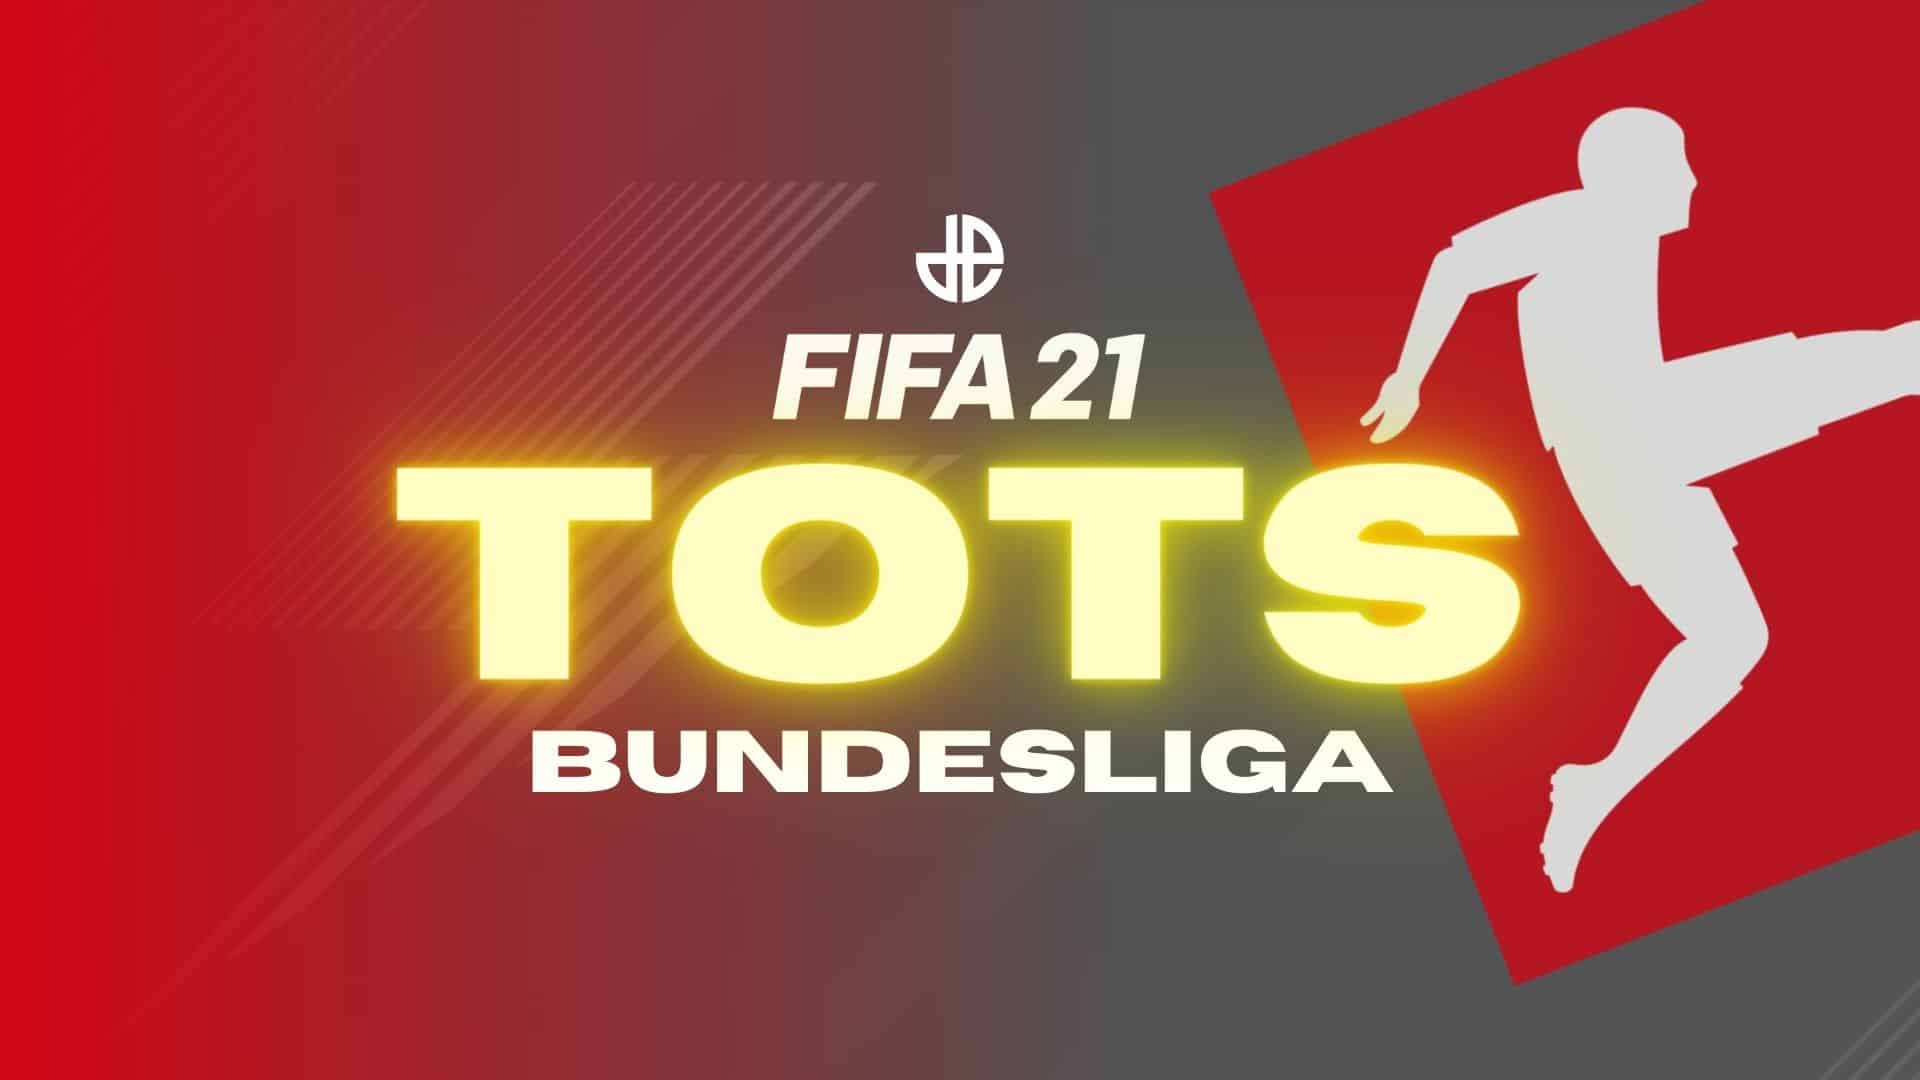 Bundesliga FIFA 21 Team of the Season TOTS lineup leaks.